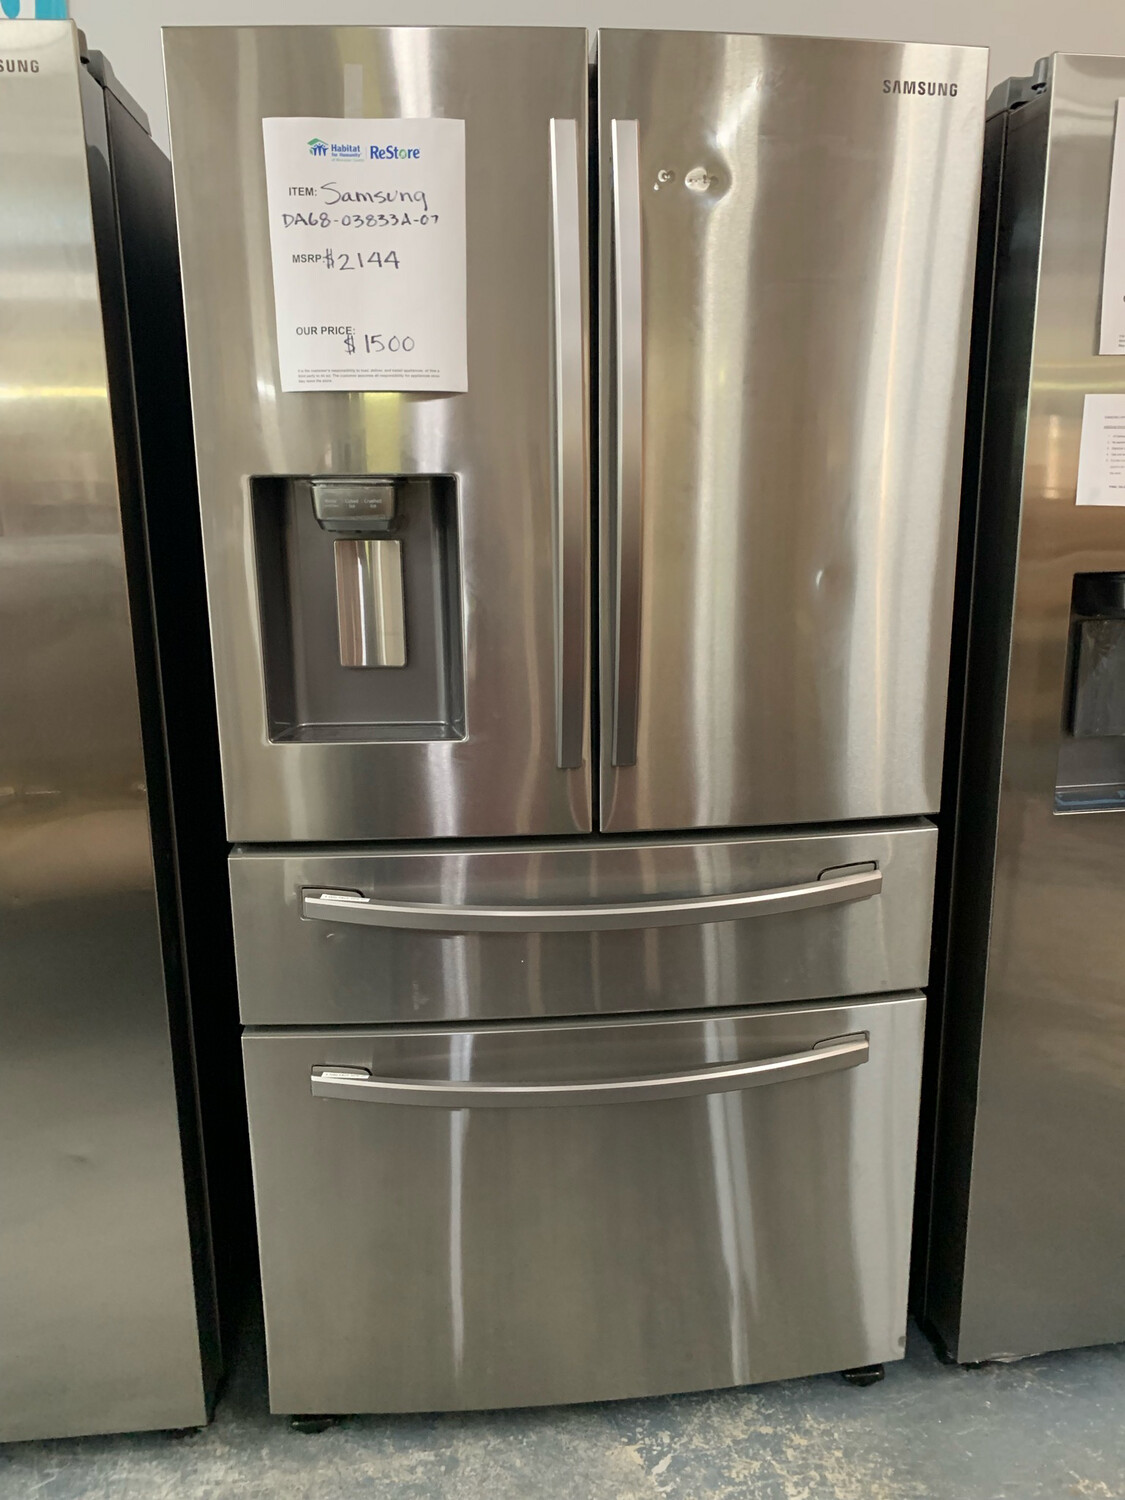 SAMSUNG Refrigerator DA68-03833A-07